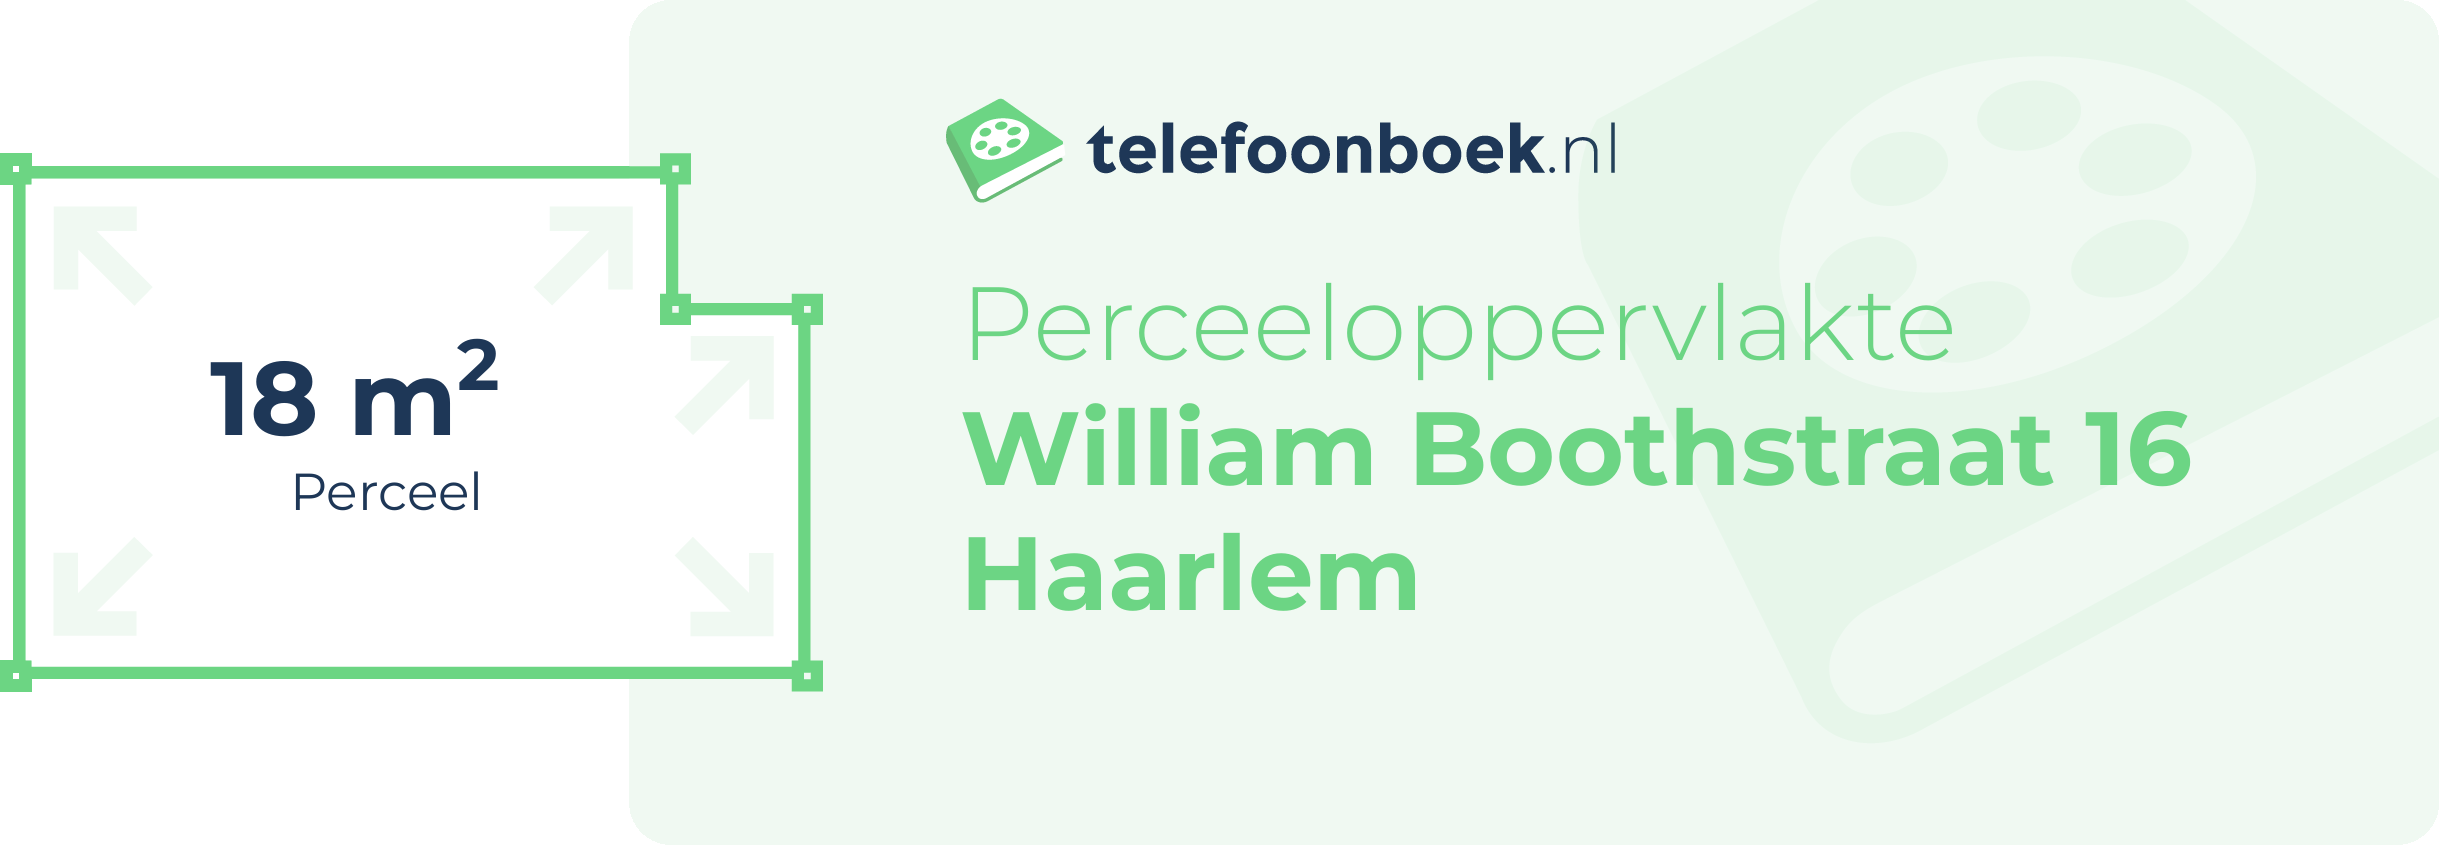 Perceeloppervlakte William Boothstraat 16 Haarlem